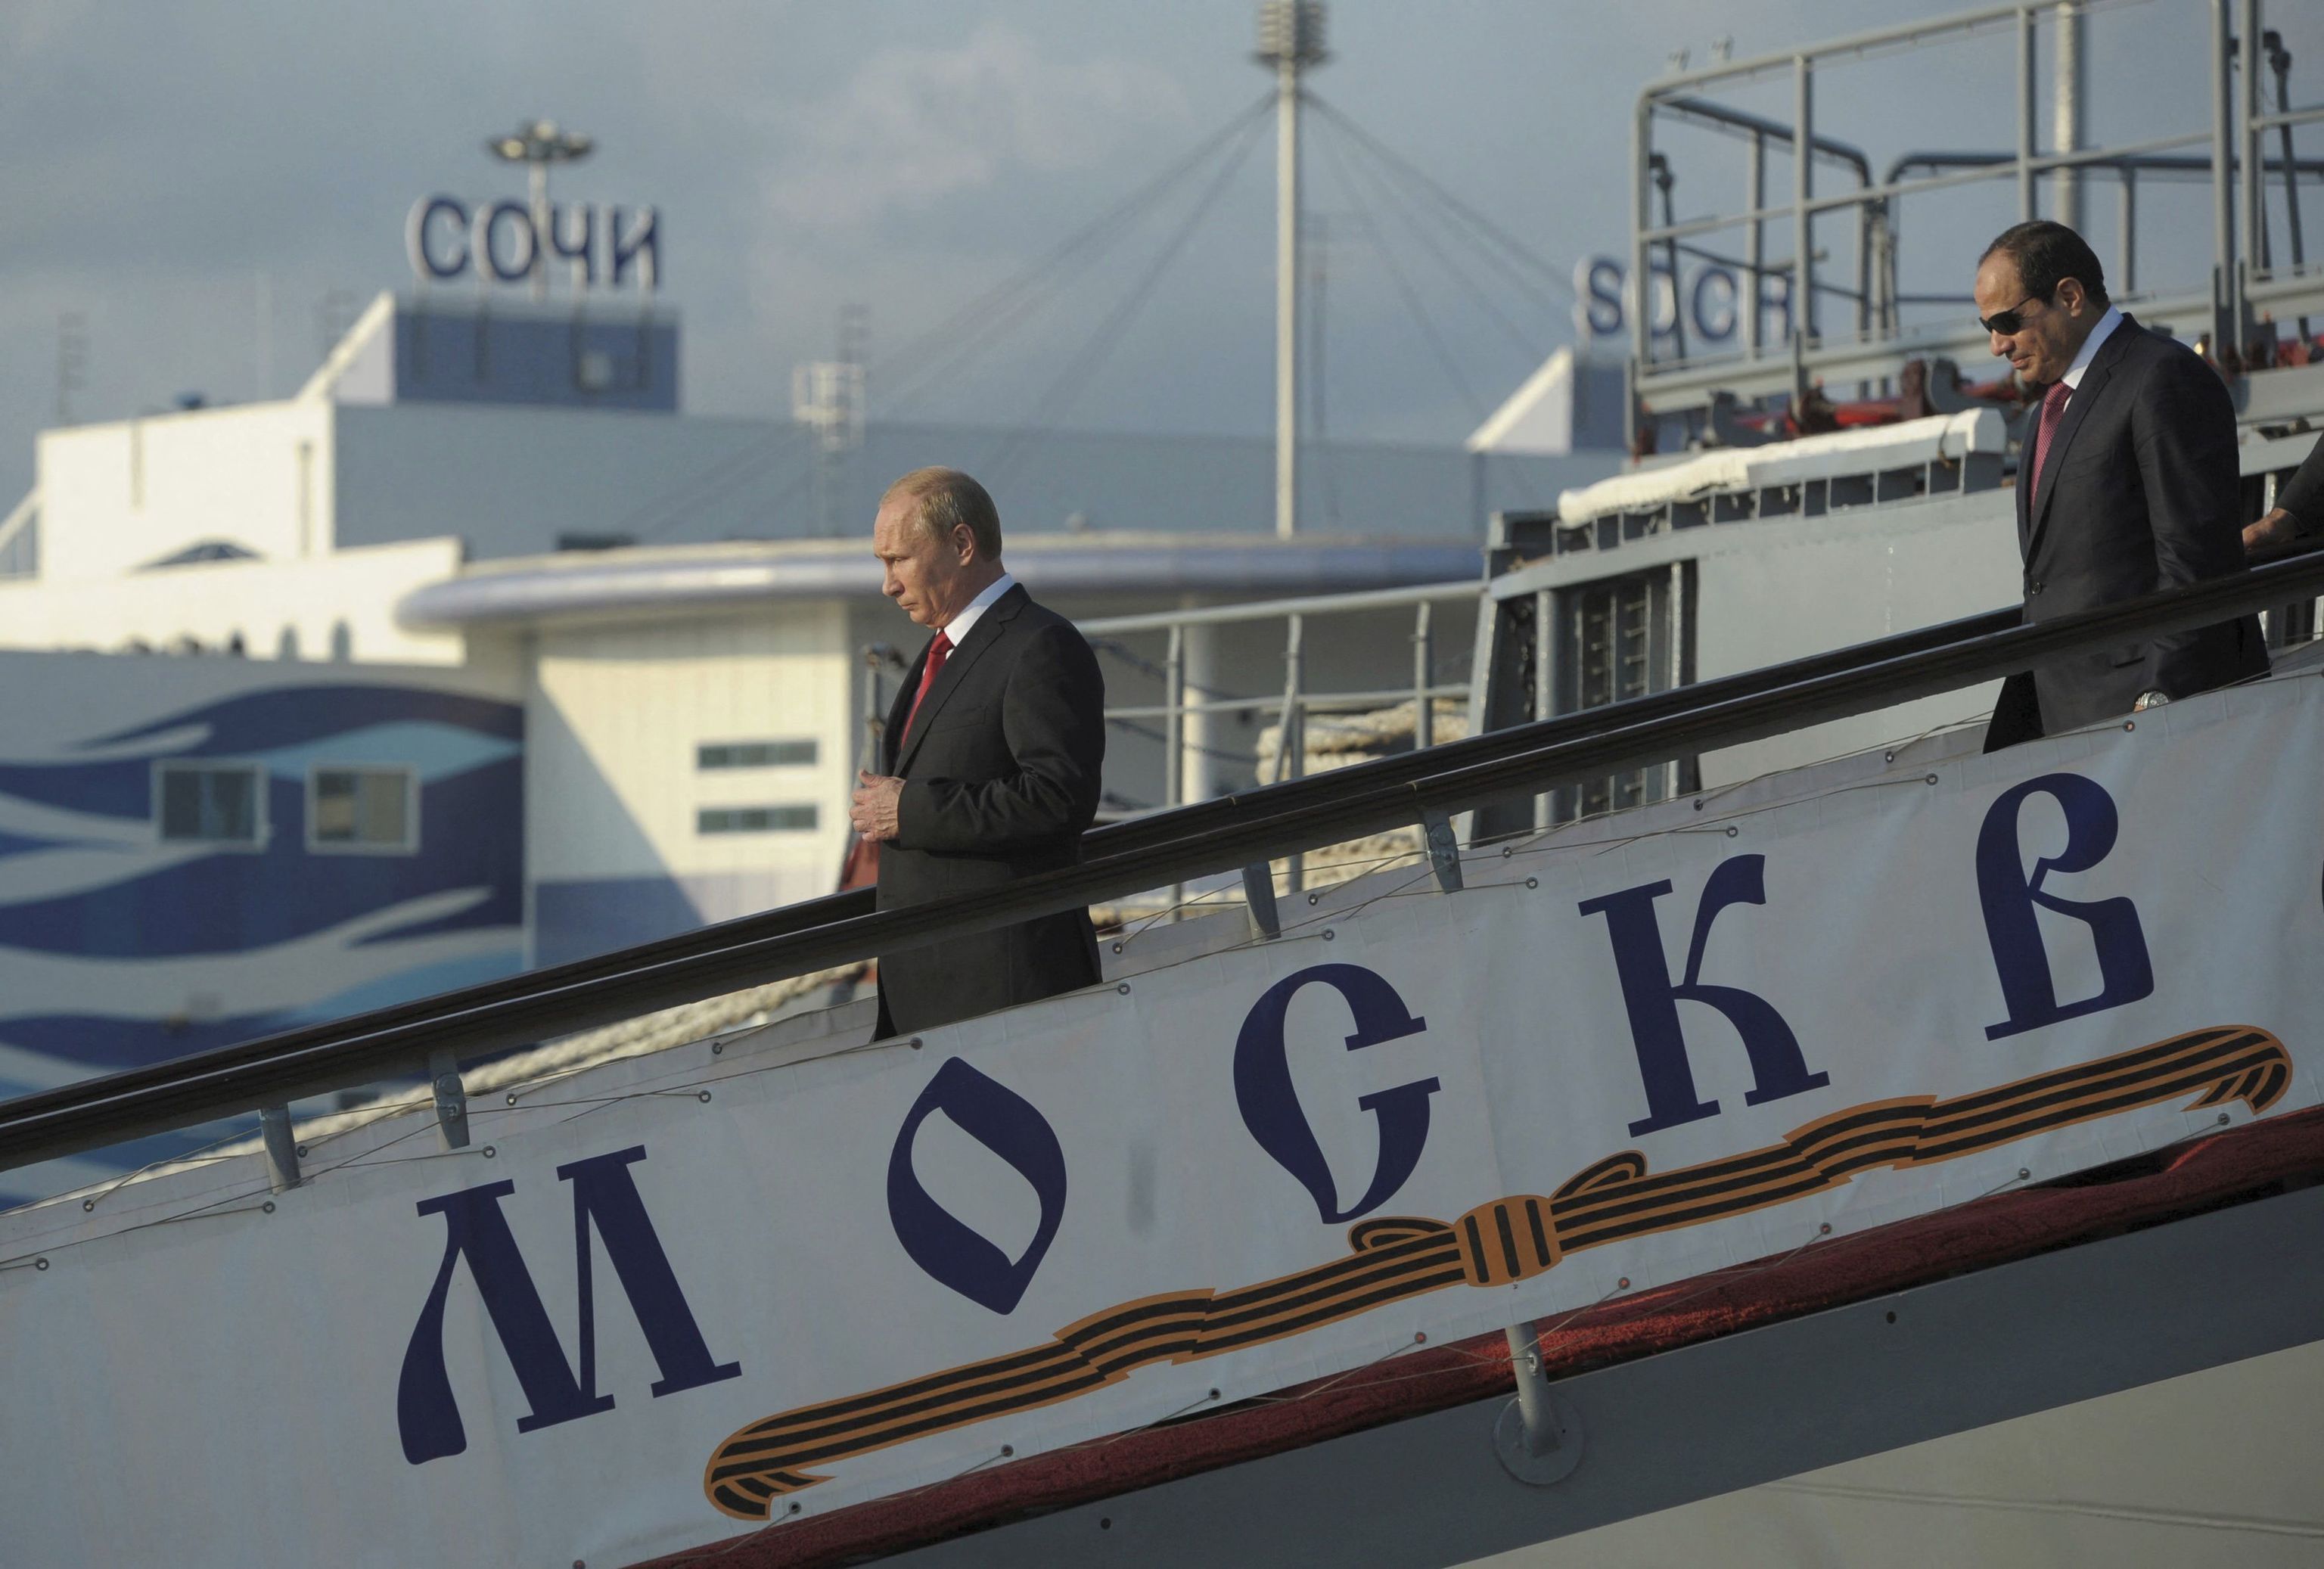 Construido en Ucrania y poderosamente armado: así es el buque ruso Moskva